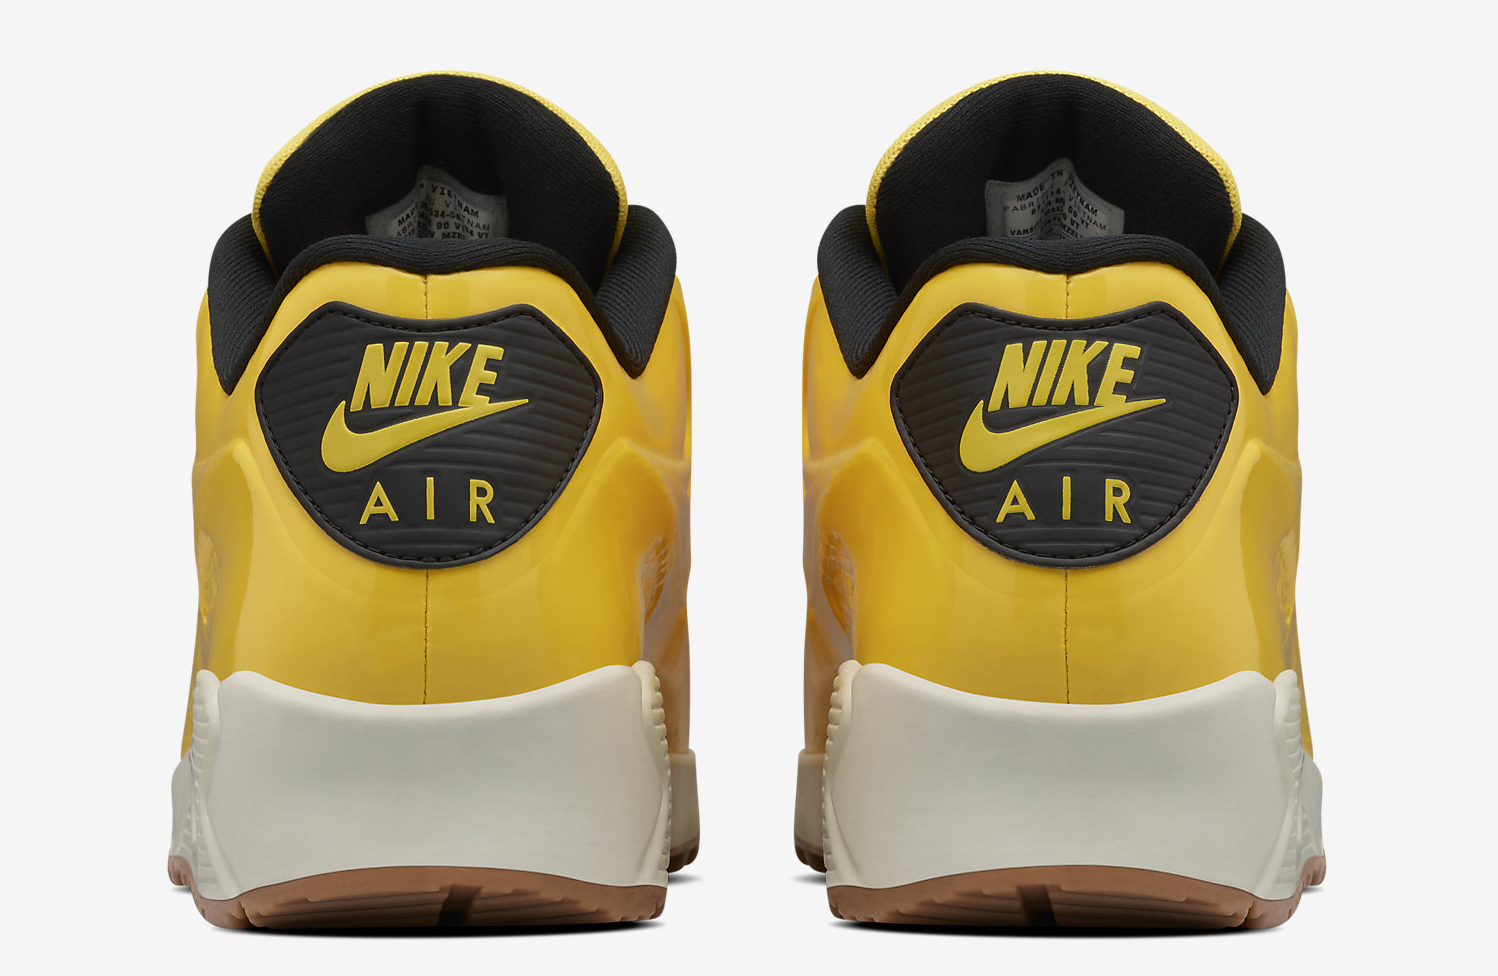 Nike Air Max 90 VT Yellow